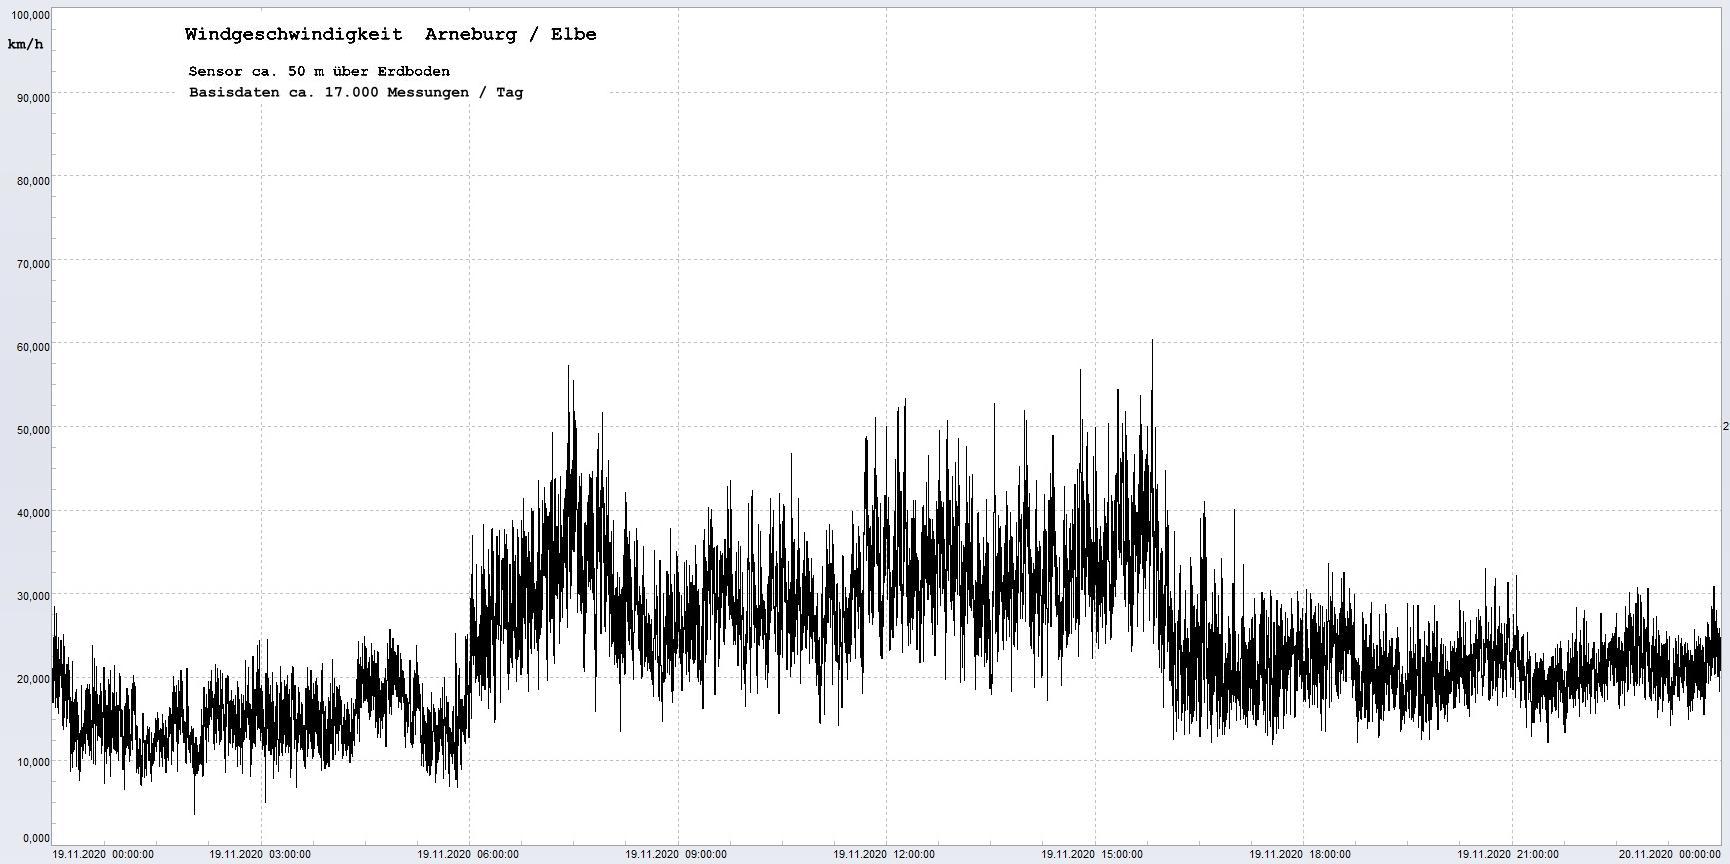 Arneburg Winddaten 19.11.2020, 
  Sensor auf Gebude, ca. 50 m ber Erdboden, 5s-Aufzeichnung